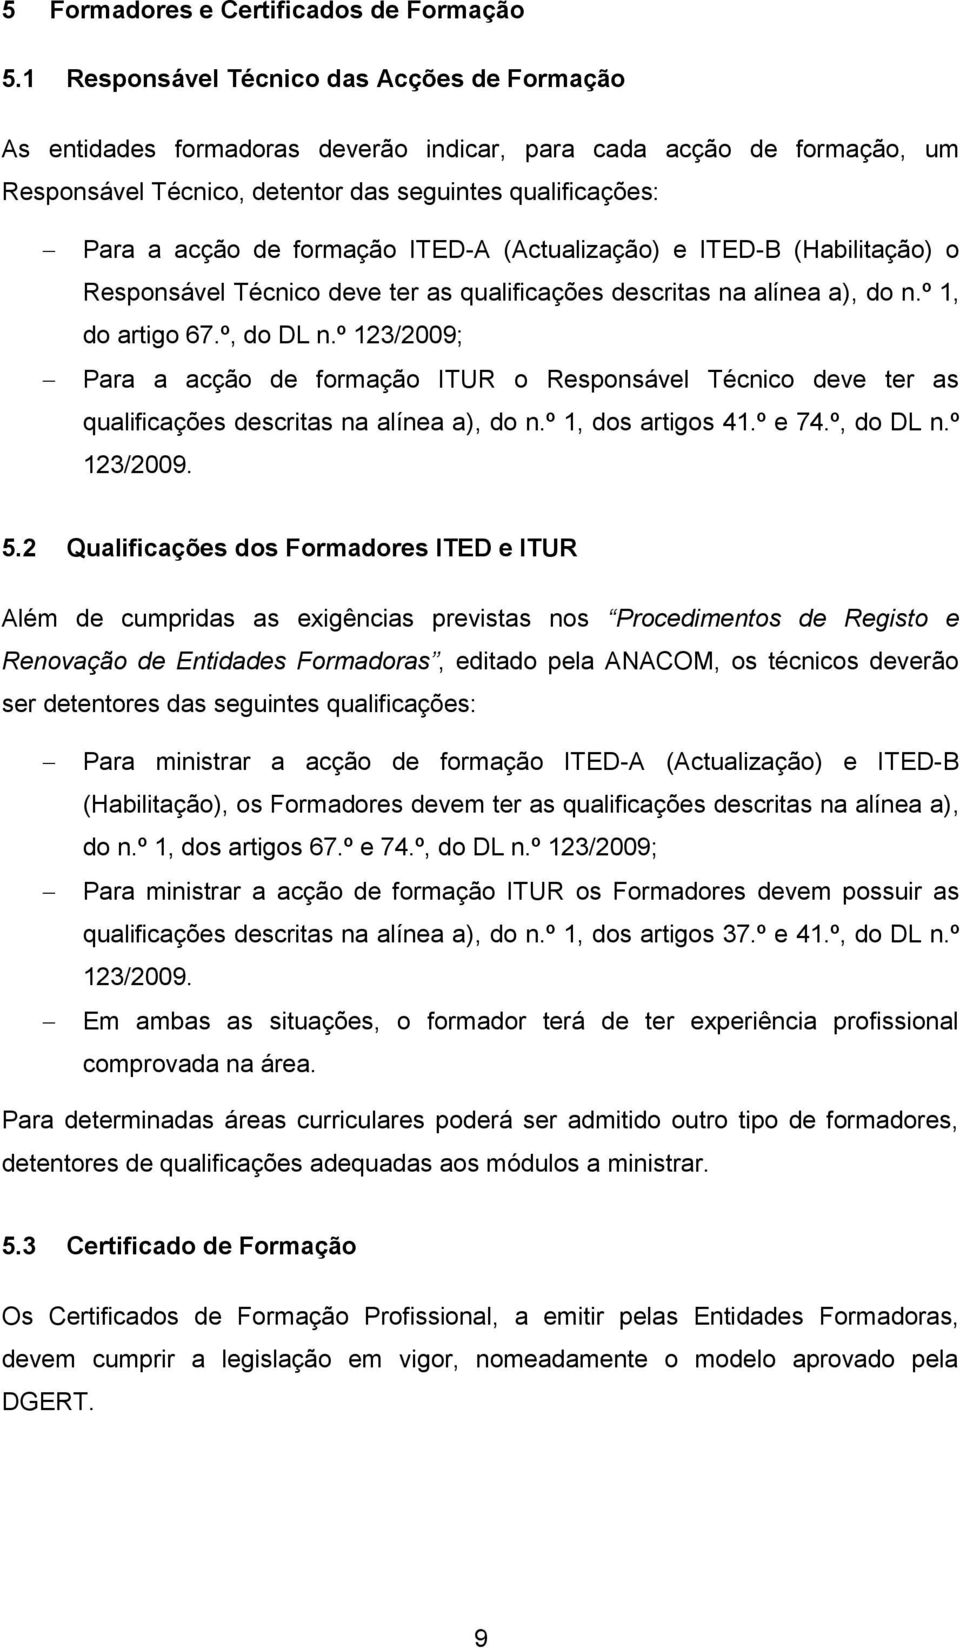 formação ITED-A (Actualização) e ITED-B (Habilitação) o Responsável Técnico deve ter as qualificações descritas na alínea a), do n.º 1, do artigo 67.º, do DL n.